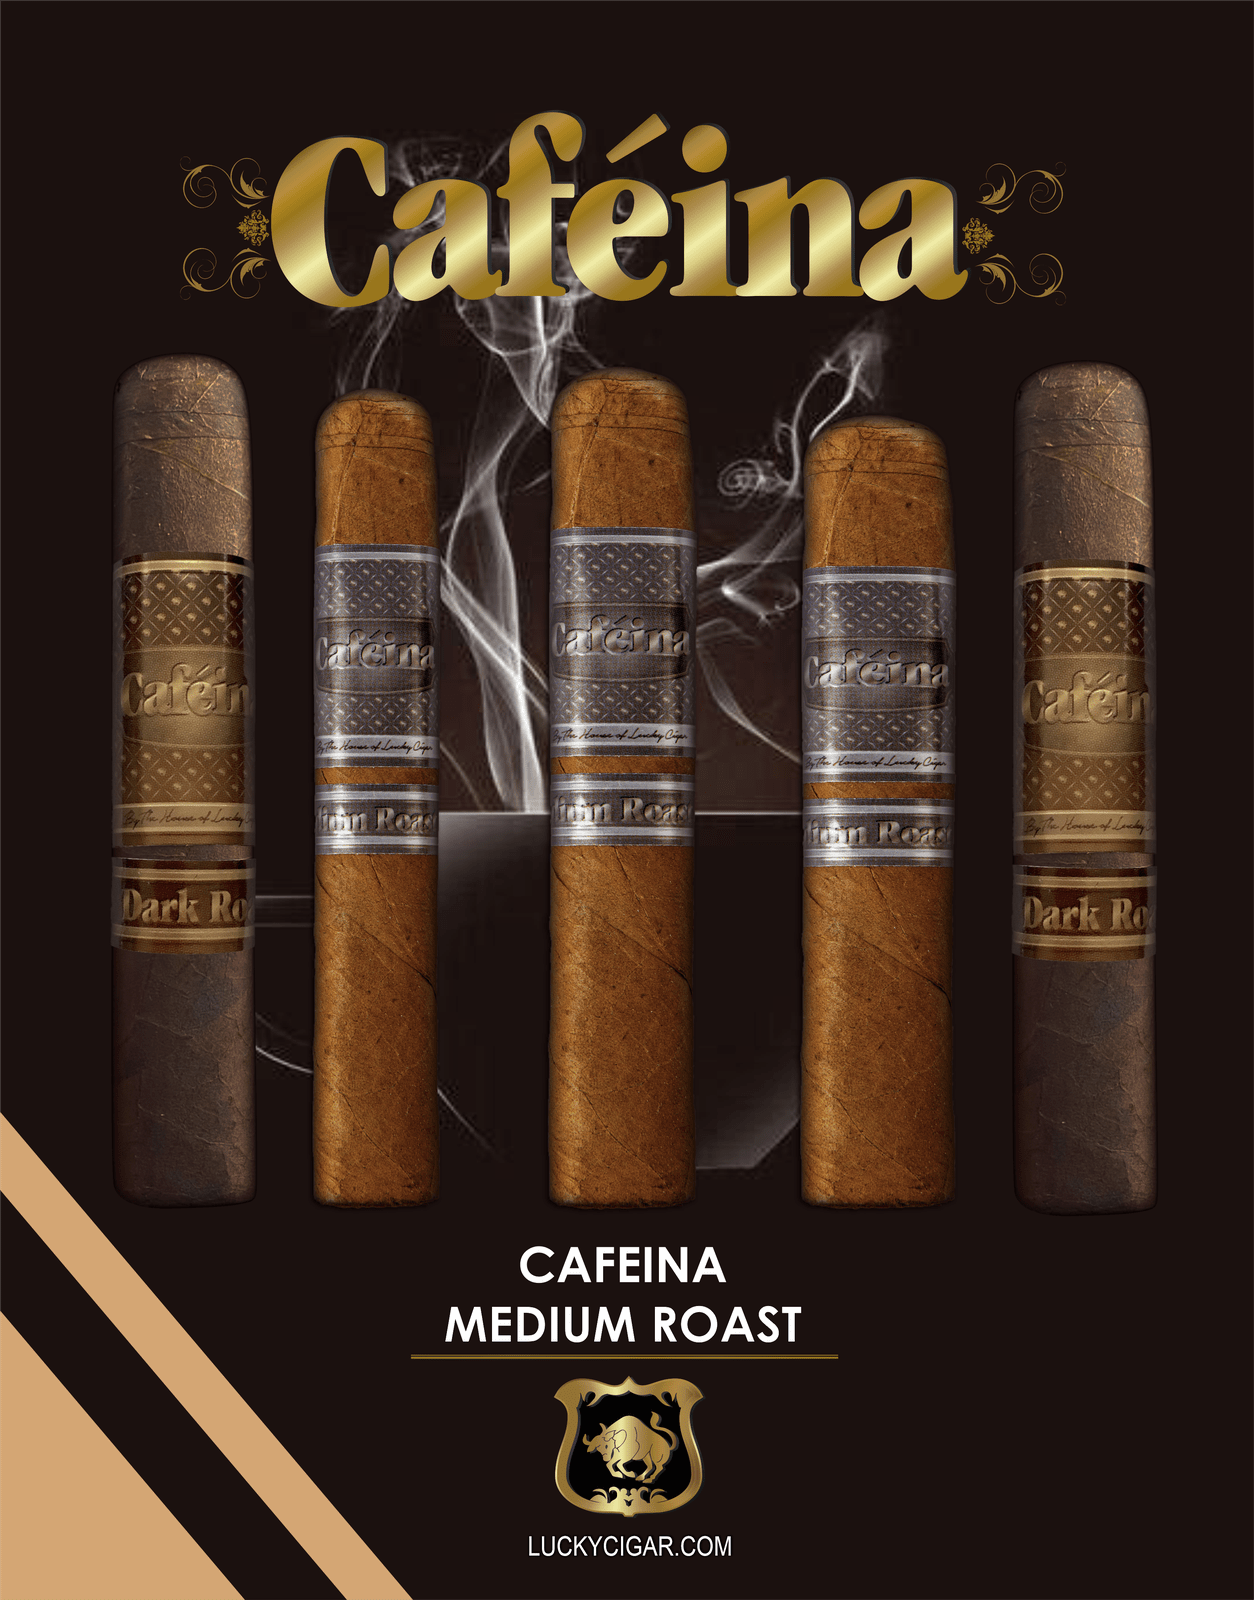 Infused Cigars: Set of 5 Cafeina Roast Cigars - 2 Dark 5x58, 3 Medium 5x58 Magnum Cigars